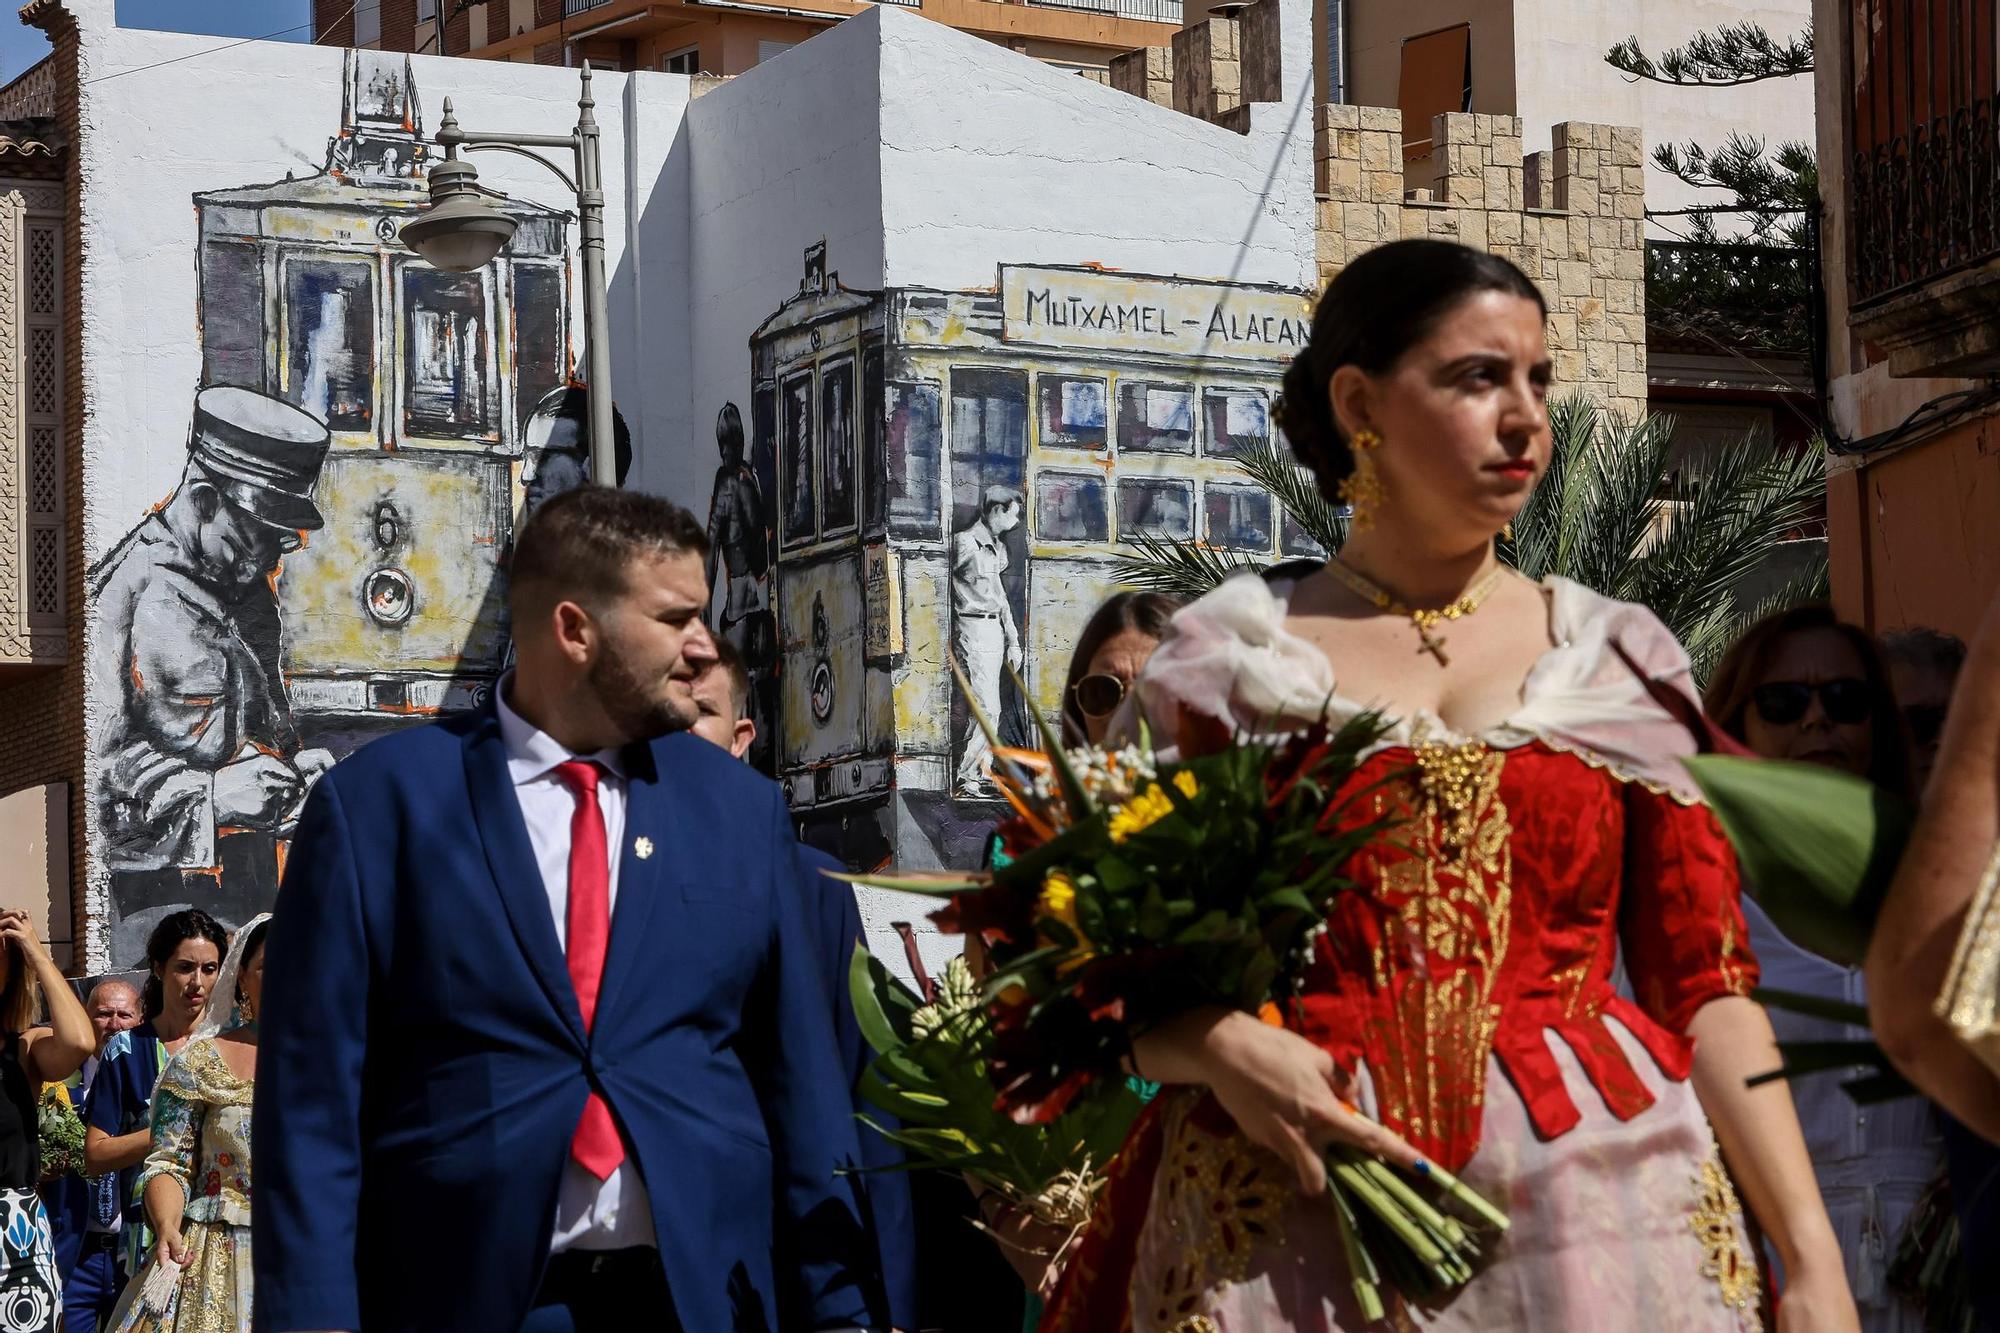 Ofrenda de flores a la Virgen de Loreto fiestas de Muchamiel